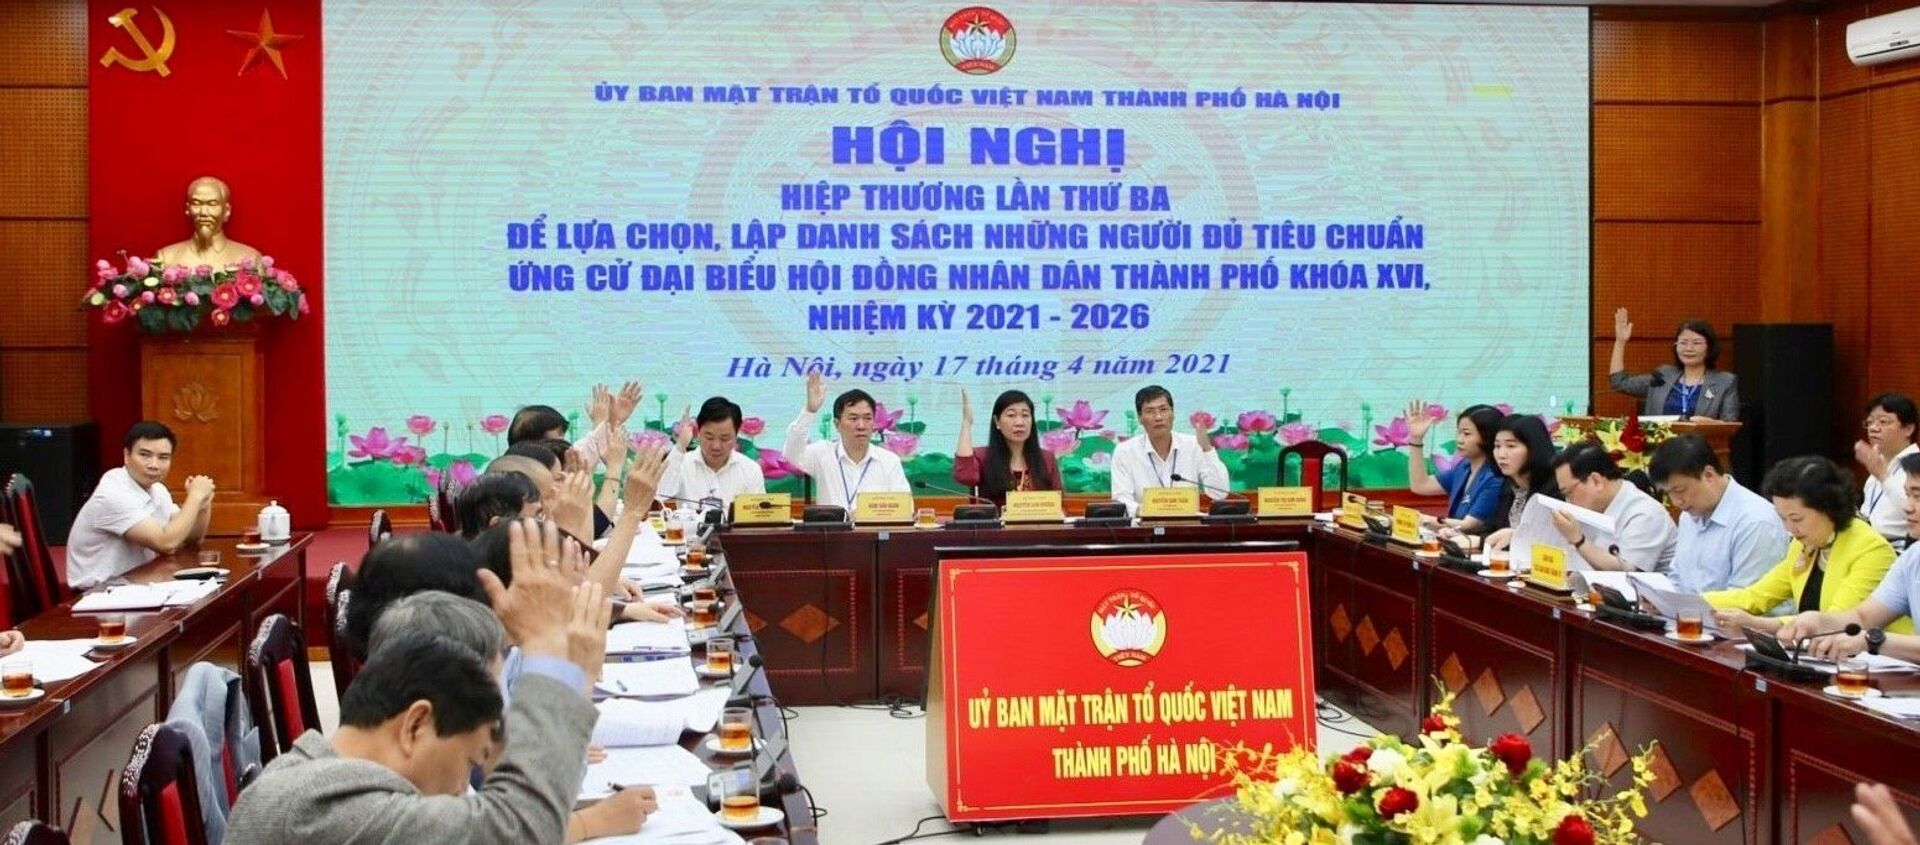 Các đại biểu giơ tay biểu quyết thống nhất danh sách chính thức 160 ứng cử viên đại biểu HĐND thành phố Hà Nội khóa XVI - Sputnik Việt Nam, 1920, 18.04.2021